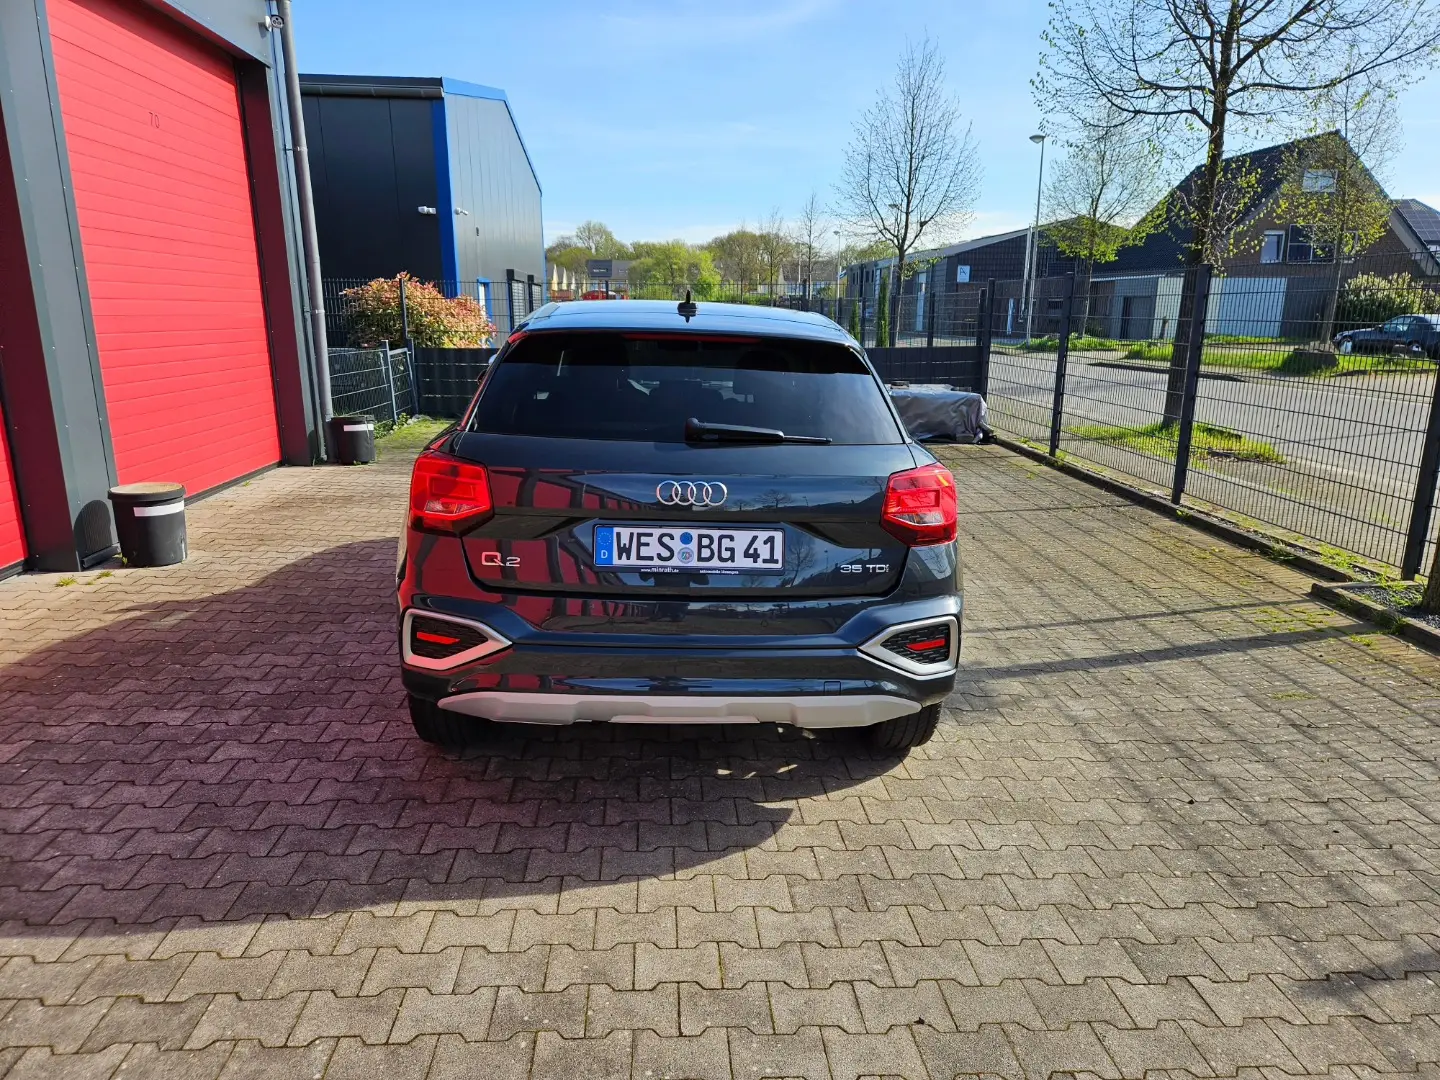 Garagenhof, davor unser neuer Audi Q2 Automatik